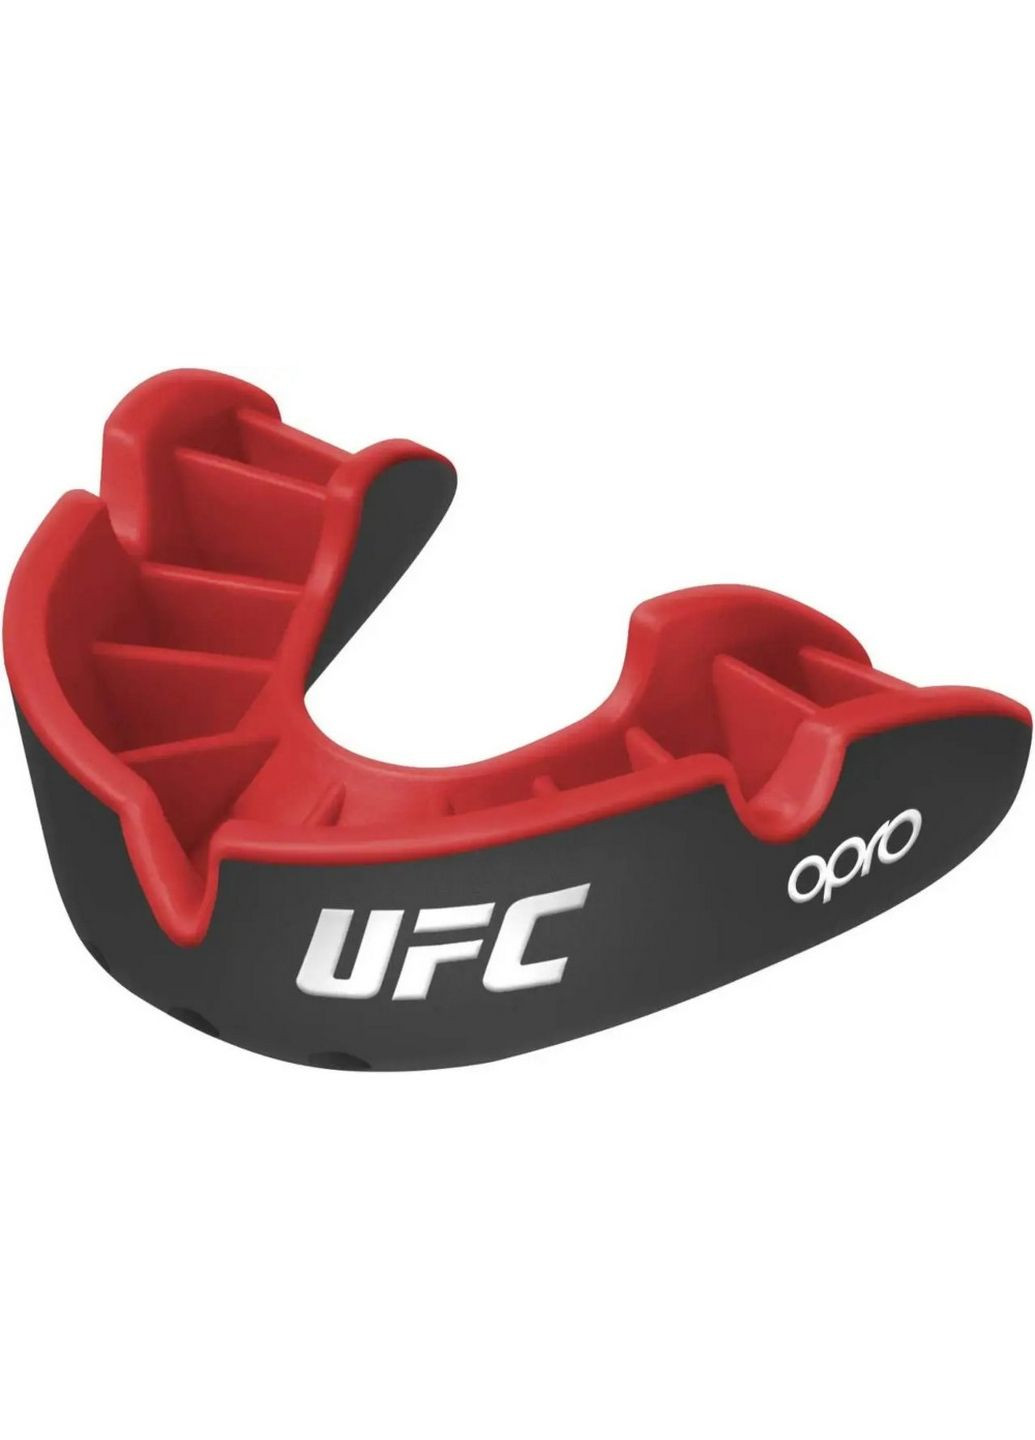 Капа Silver UFC детская (возраст до 11) Opro (293483048)